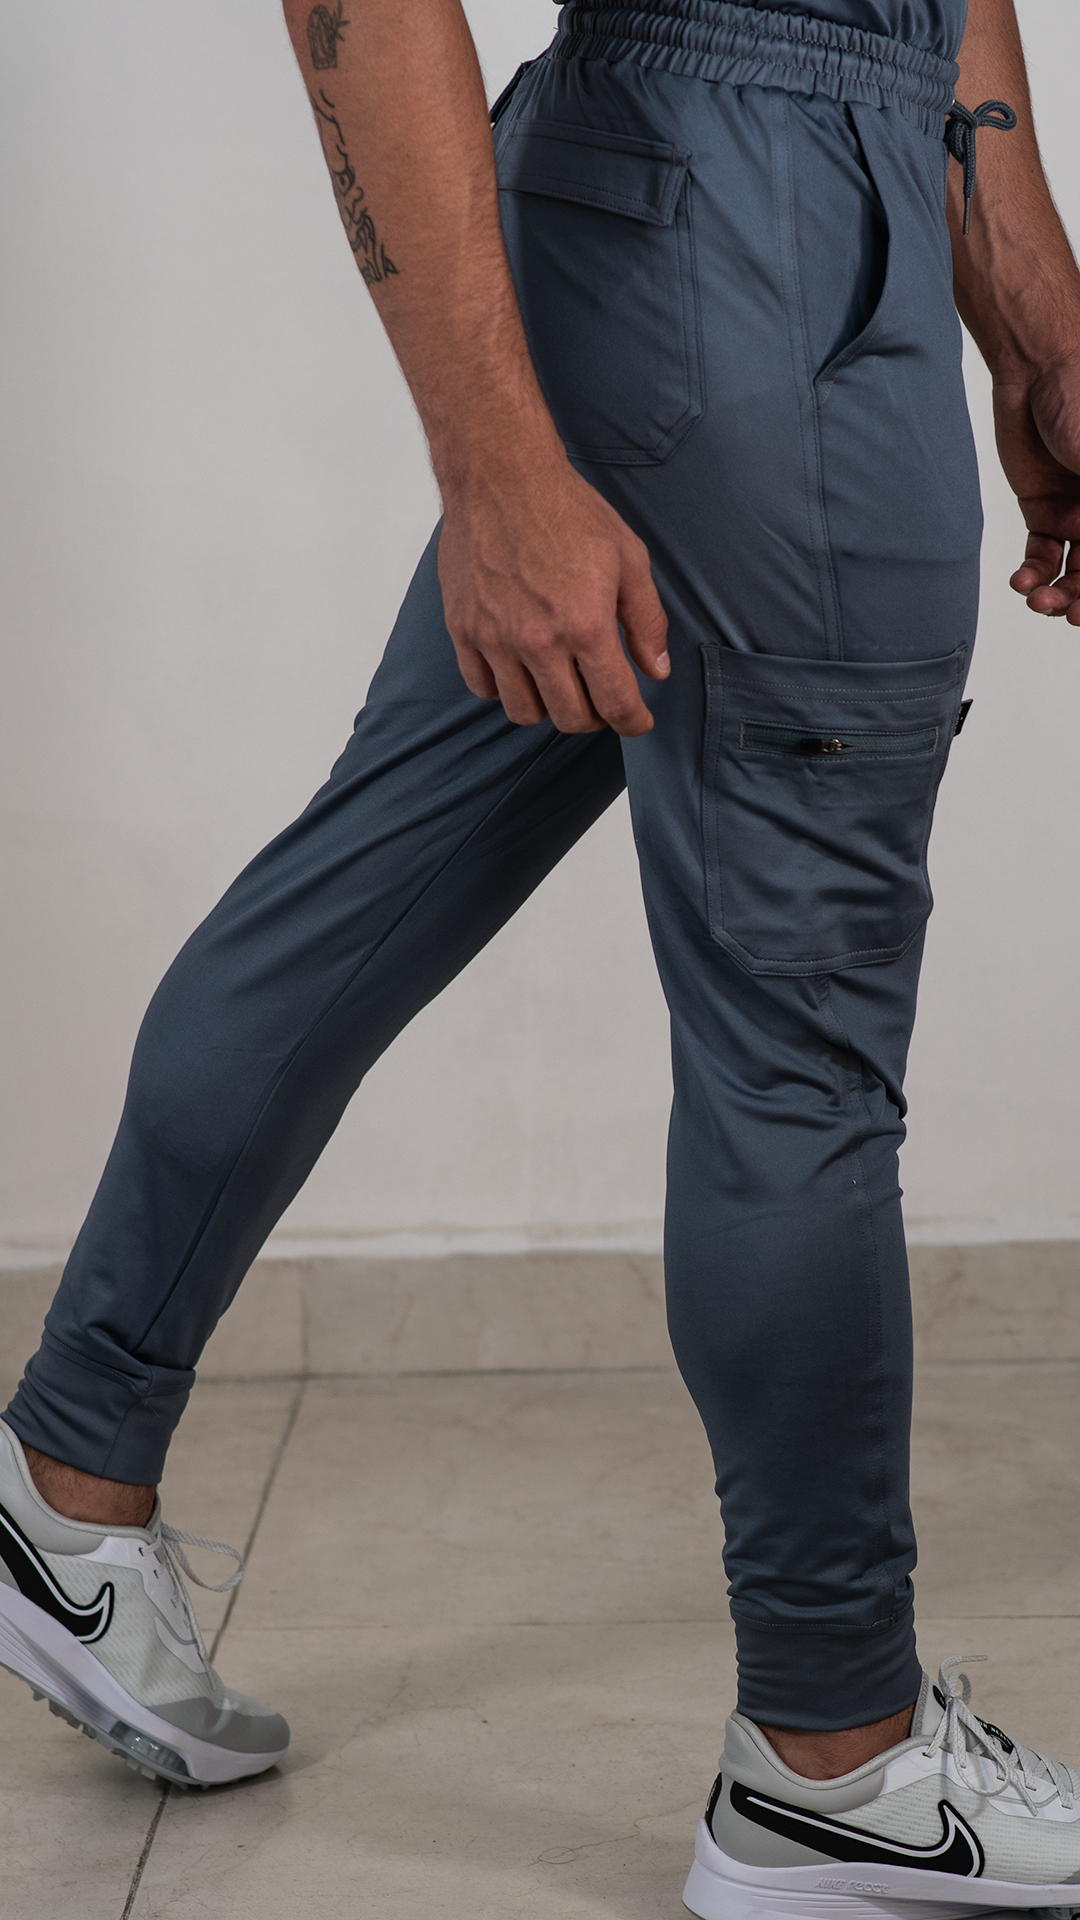 how to tighten scrub pants waist elastic｜TikTok Search